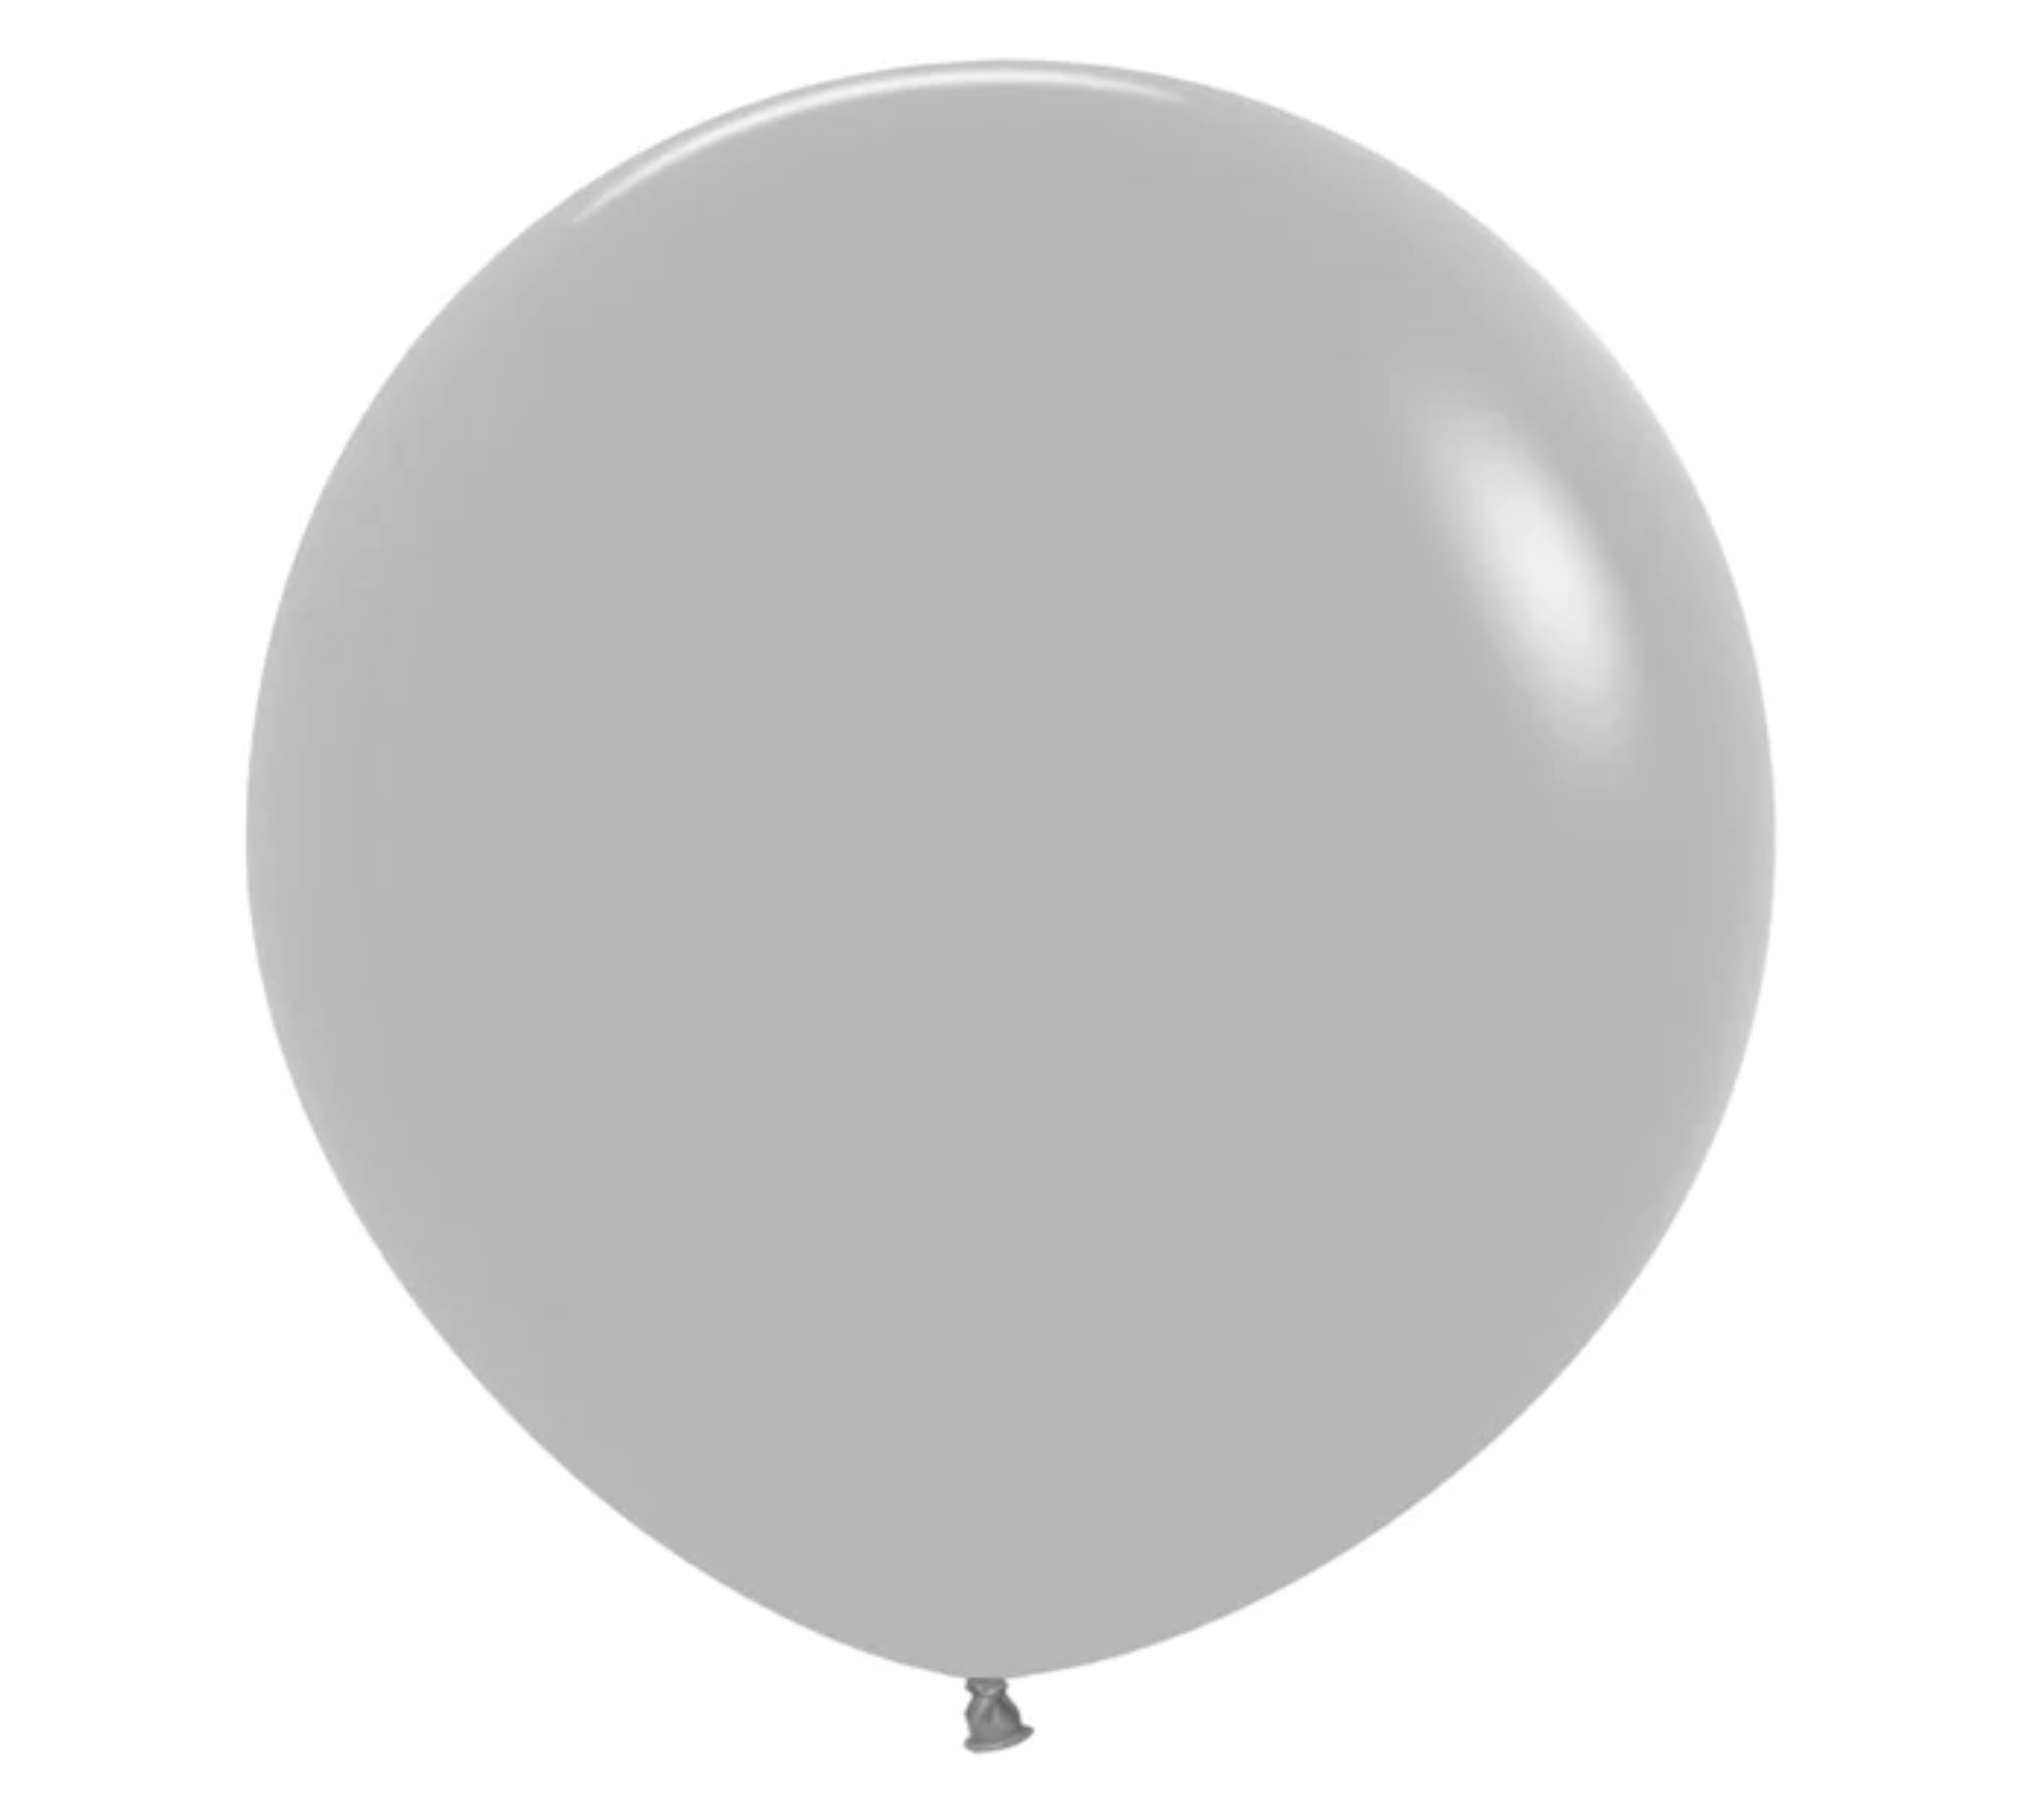 24" Sempertex Deluxe Grey Latex Balloons | 10 Count